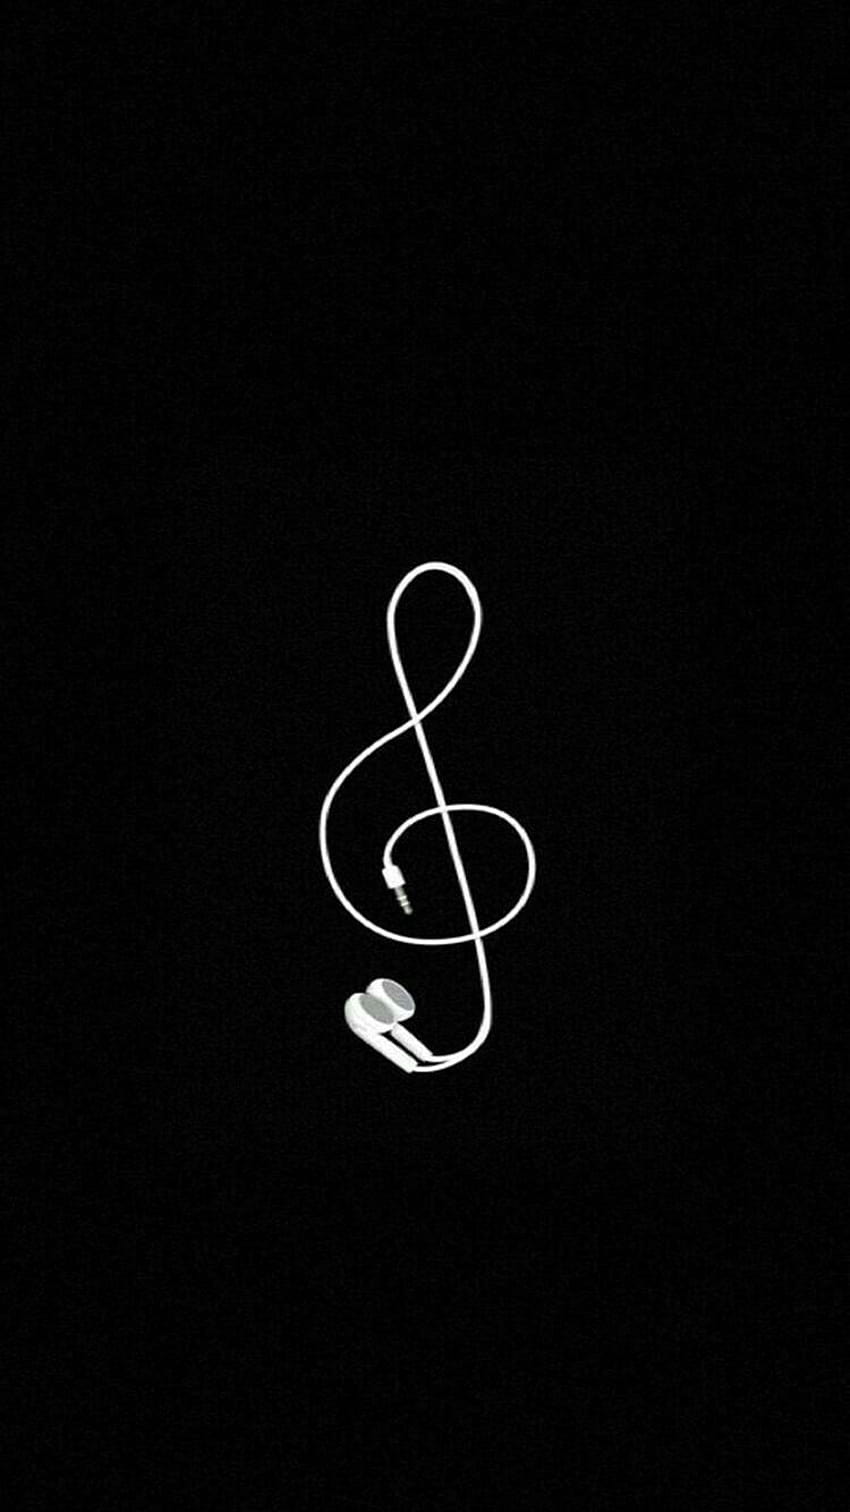 Simple Music écouteurs clé de sol noir et blanc iPhone, Android, g clif Fond d'écran de téléphone HD